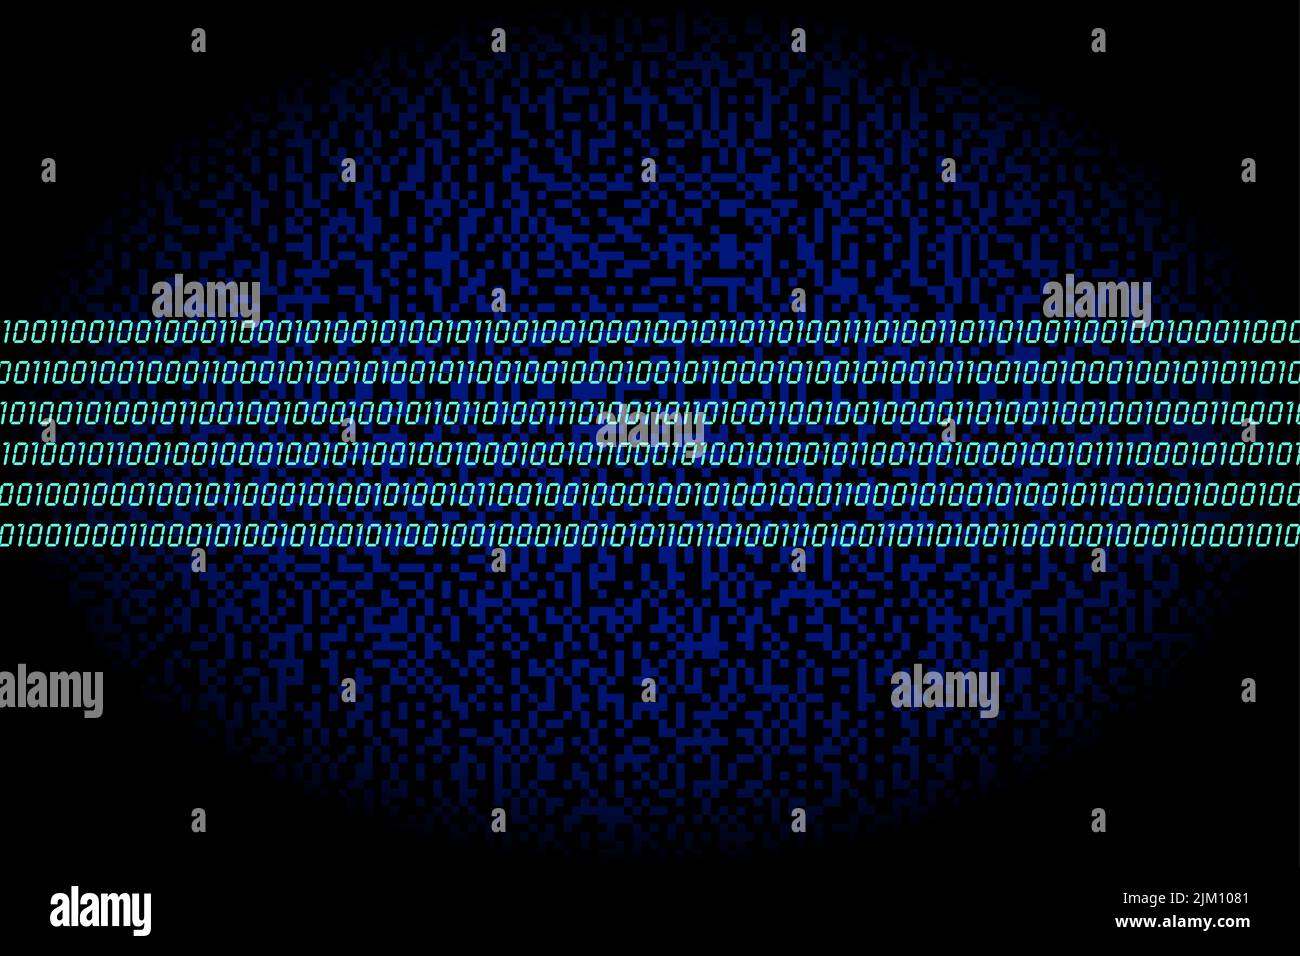 Datenautobahn. Band aus sechs türkisfarbenen Reihen, bestehend aus Nullen und Einsen, binäre Codierung, über einem dunkelblauen Hintergrund zufällig erzeugter quadratischer Punkte. Stockfoto